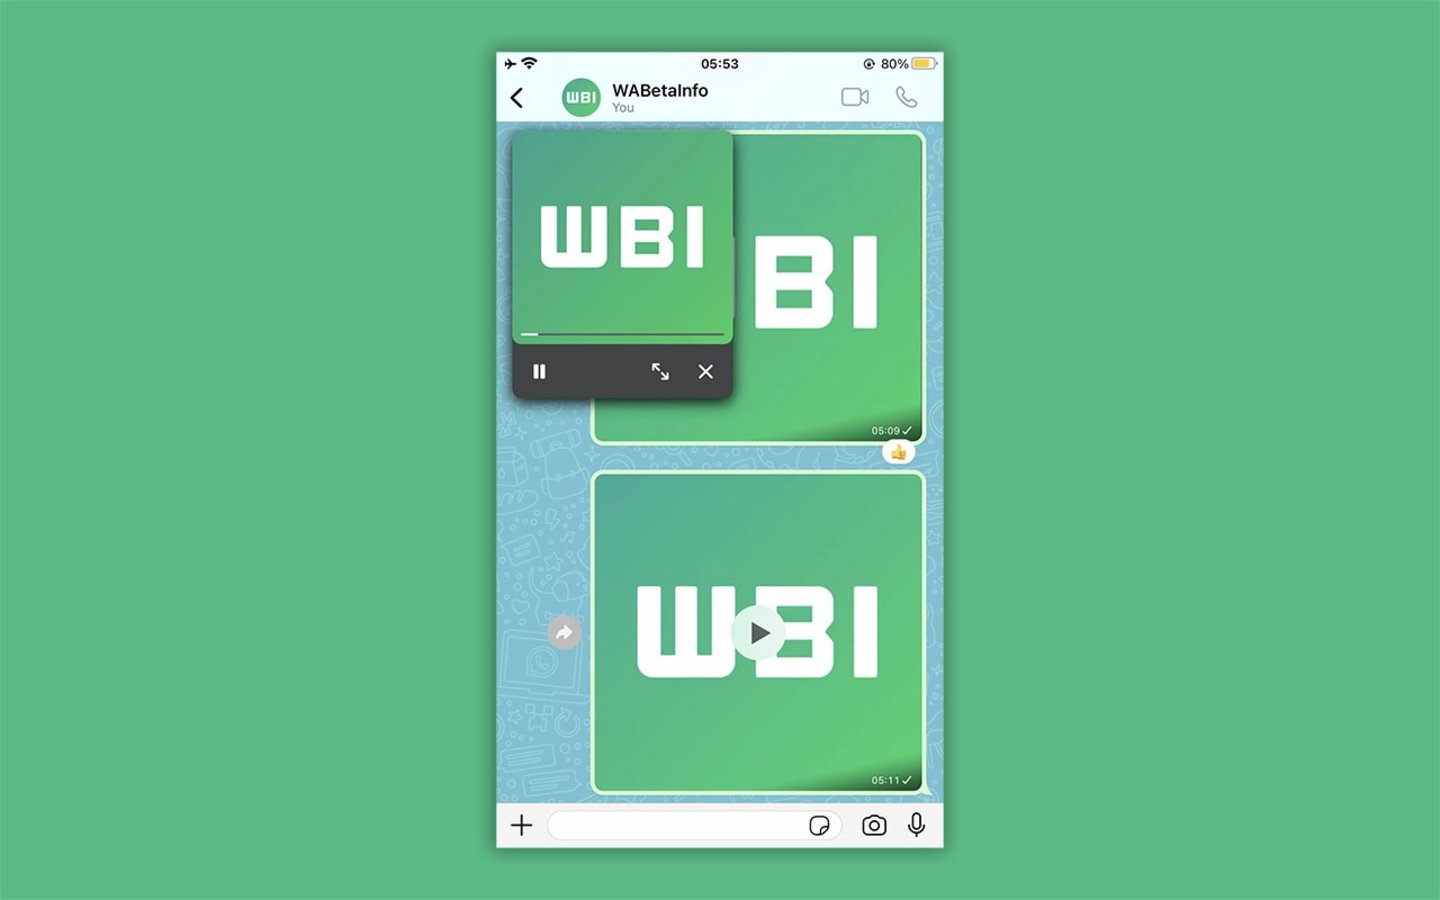 Captura de pantalla de WhatsApp mostrando ña nueva función de vídeo en PiP